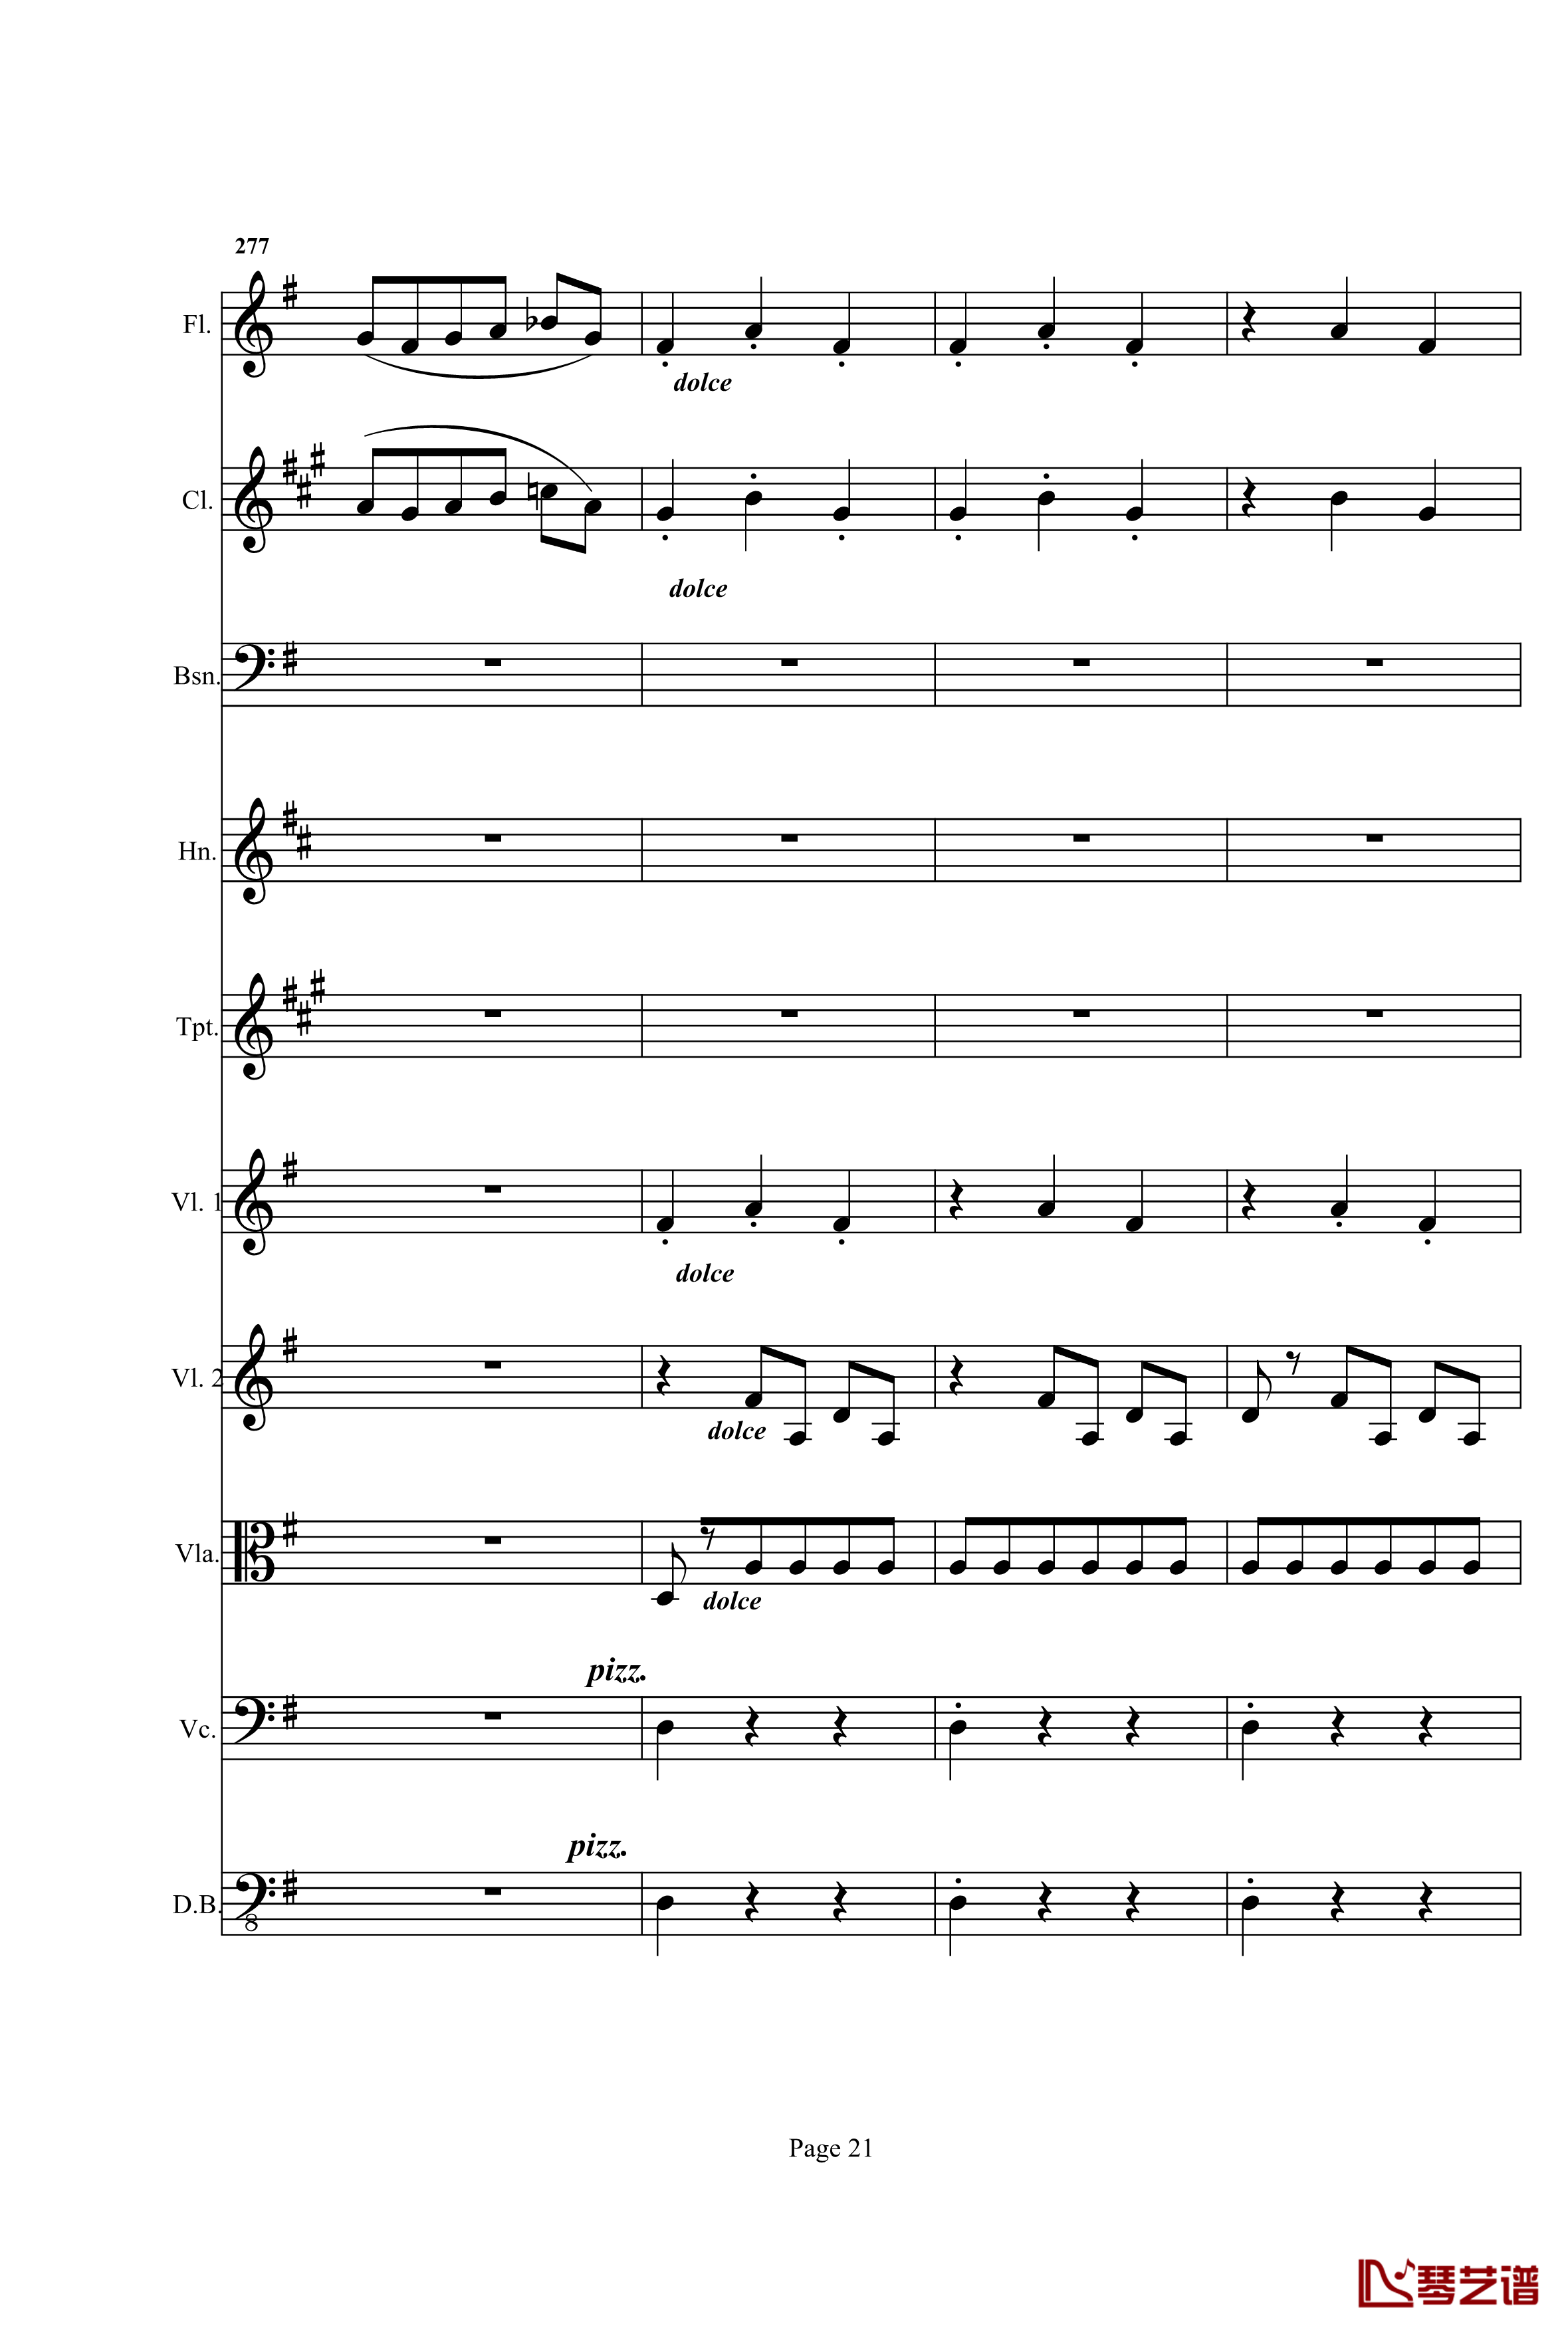 奏鸣曲之交响钢琴谱-第25首-Ⅰ-贝多芬-beethoven21